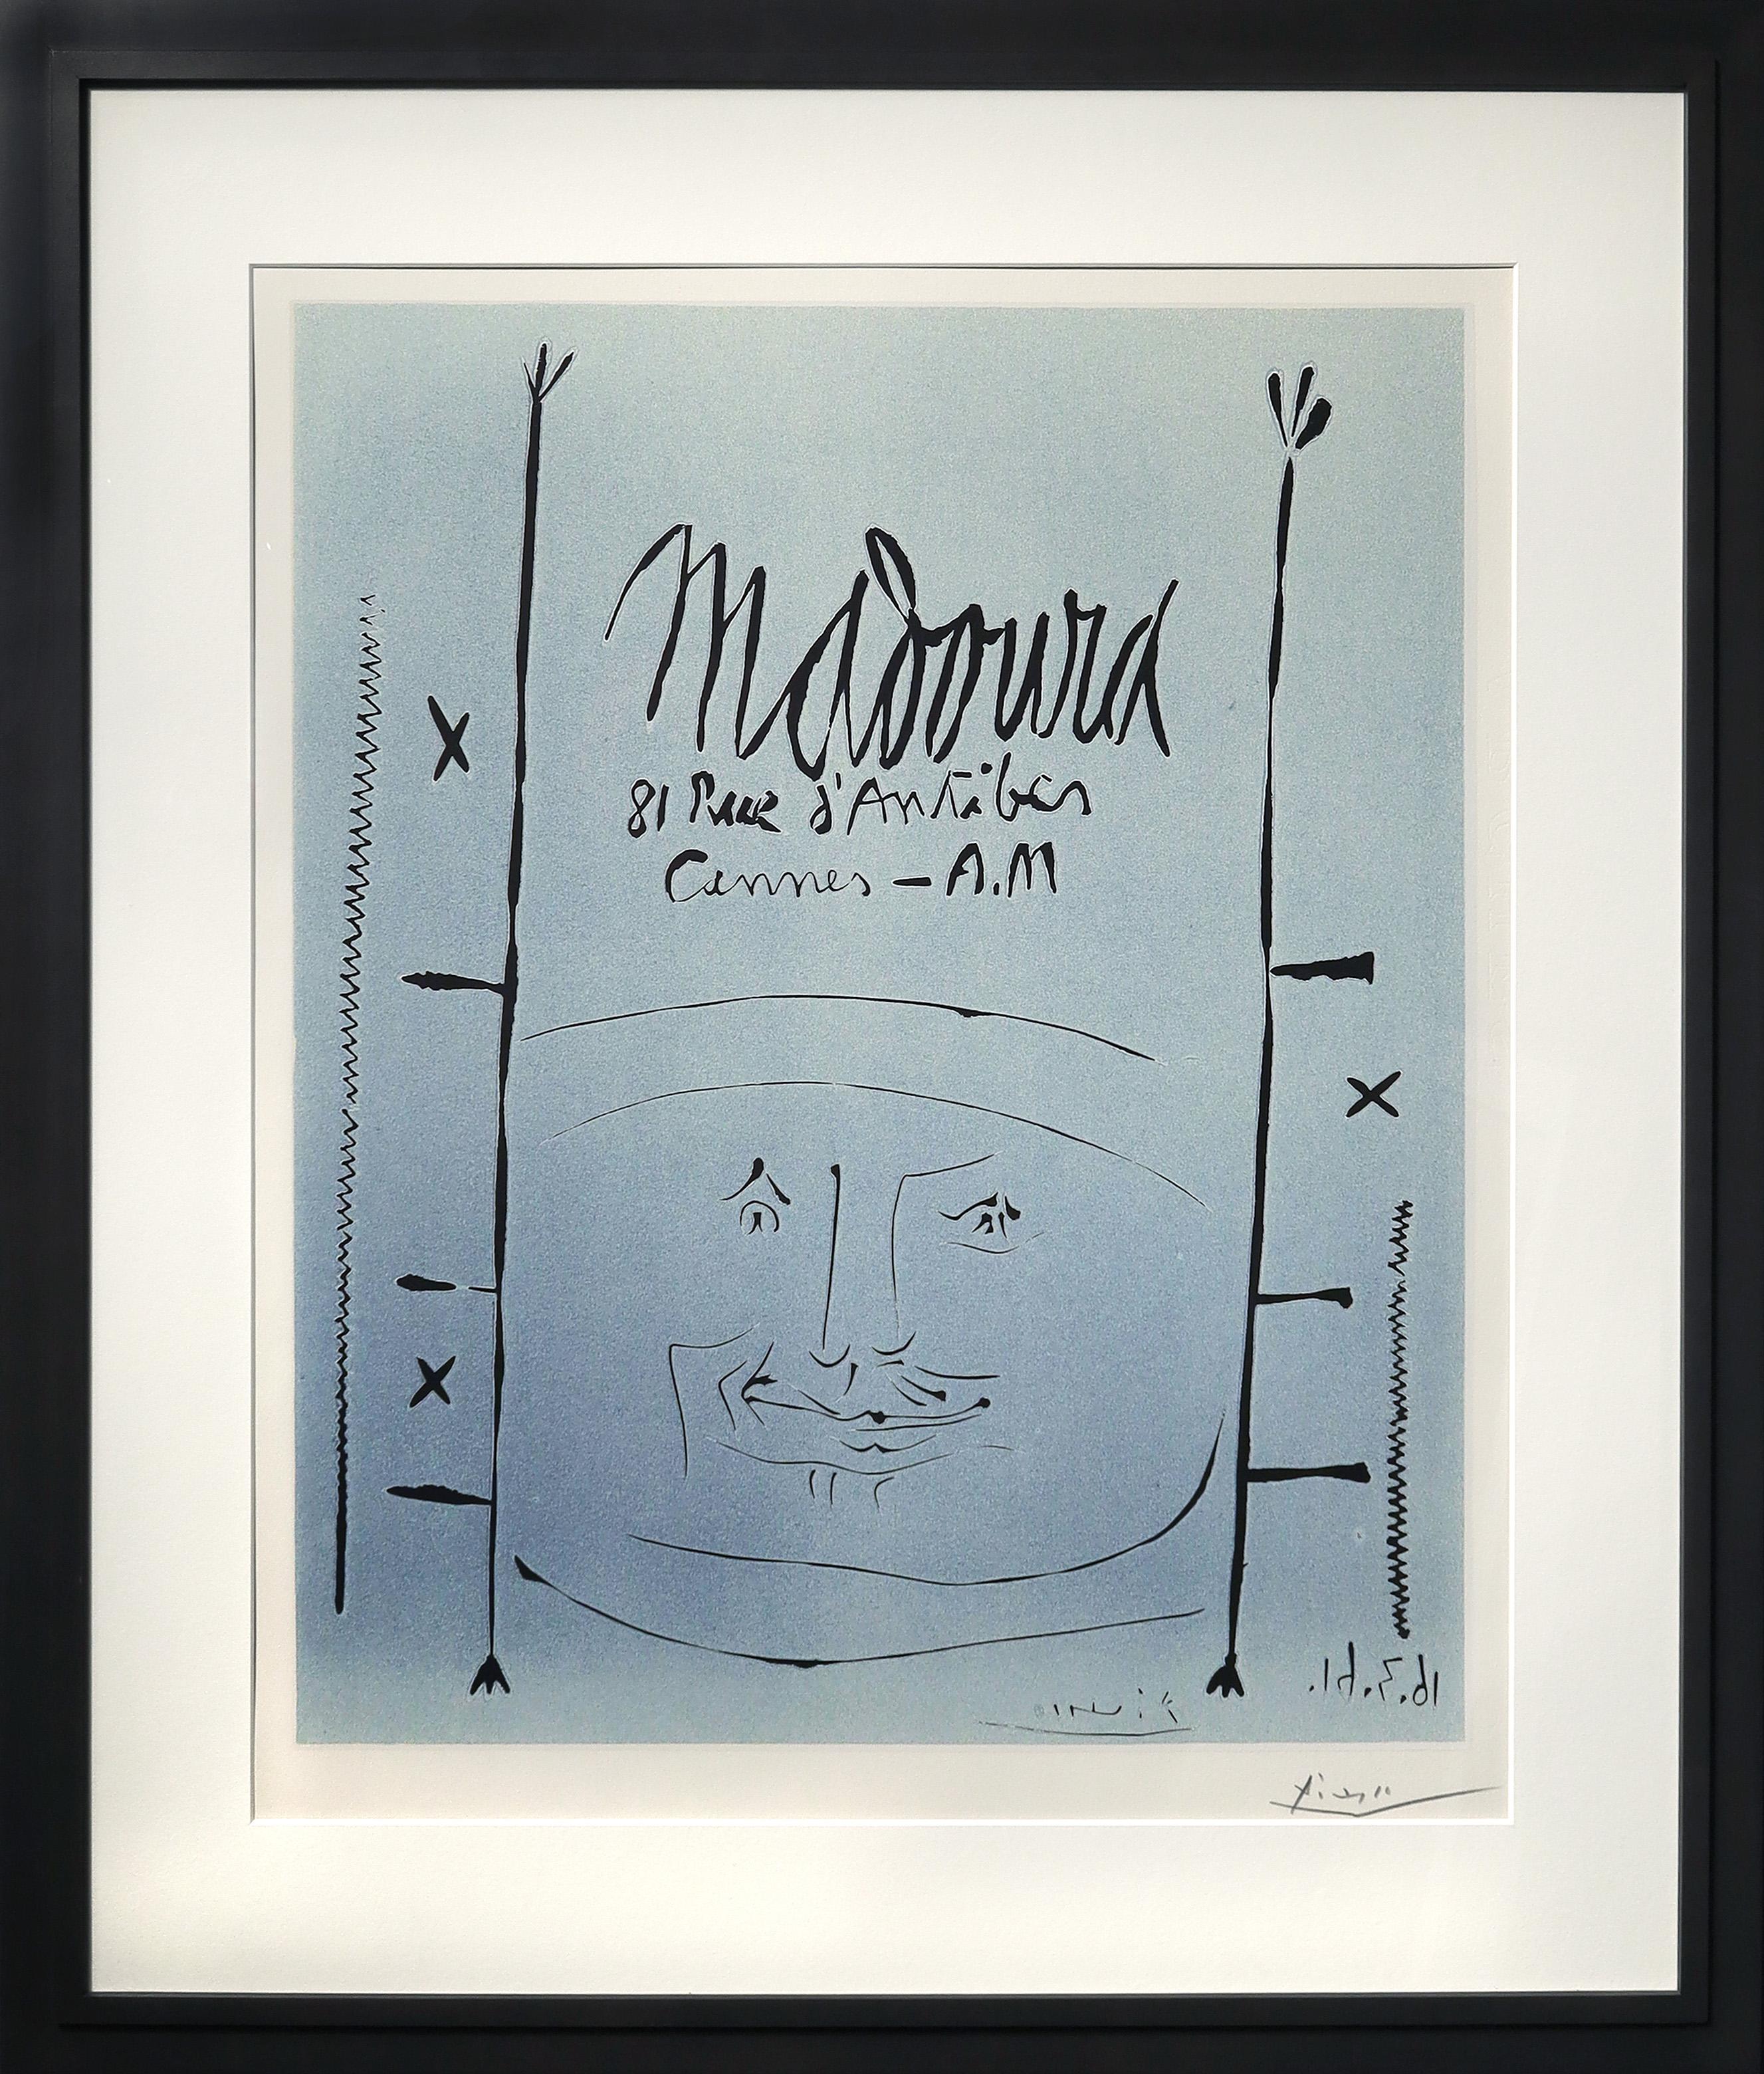 Pablo Picasso 'Madoura' Stampa linoleografica, 1961